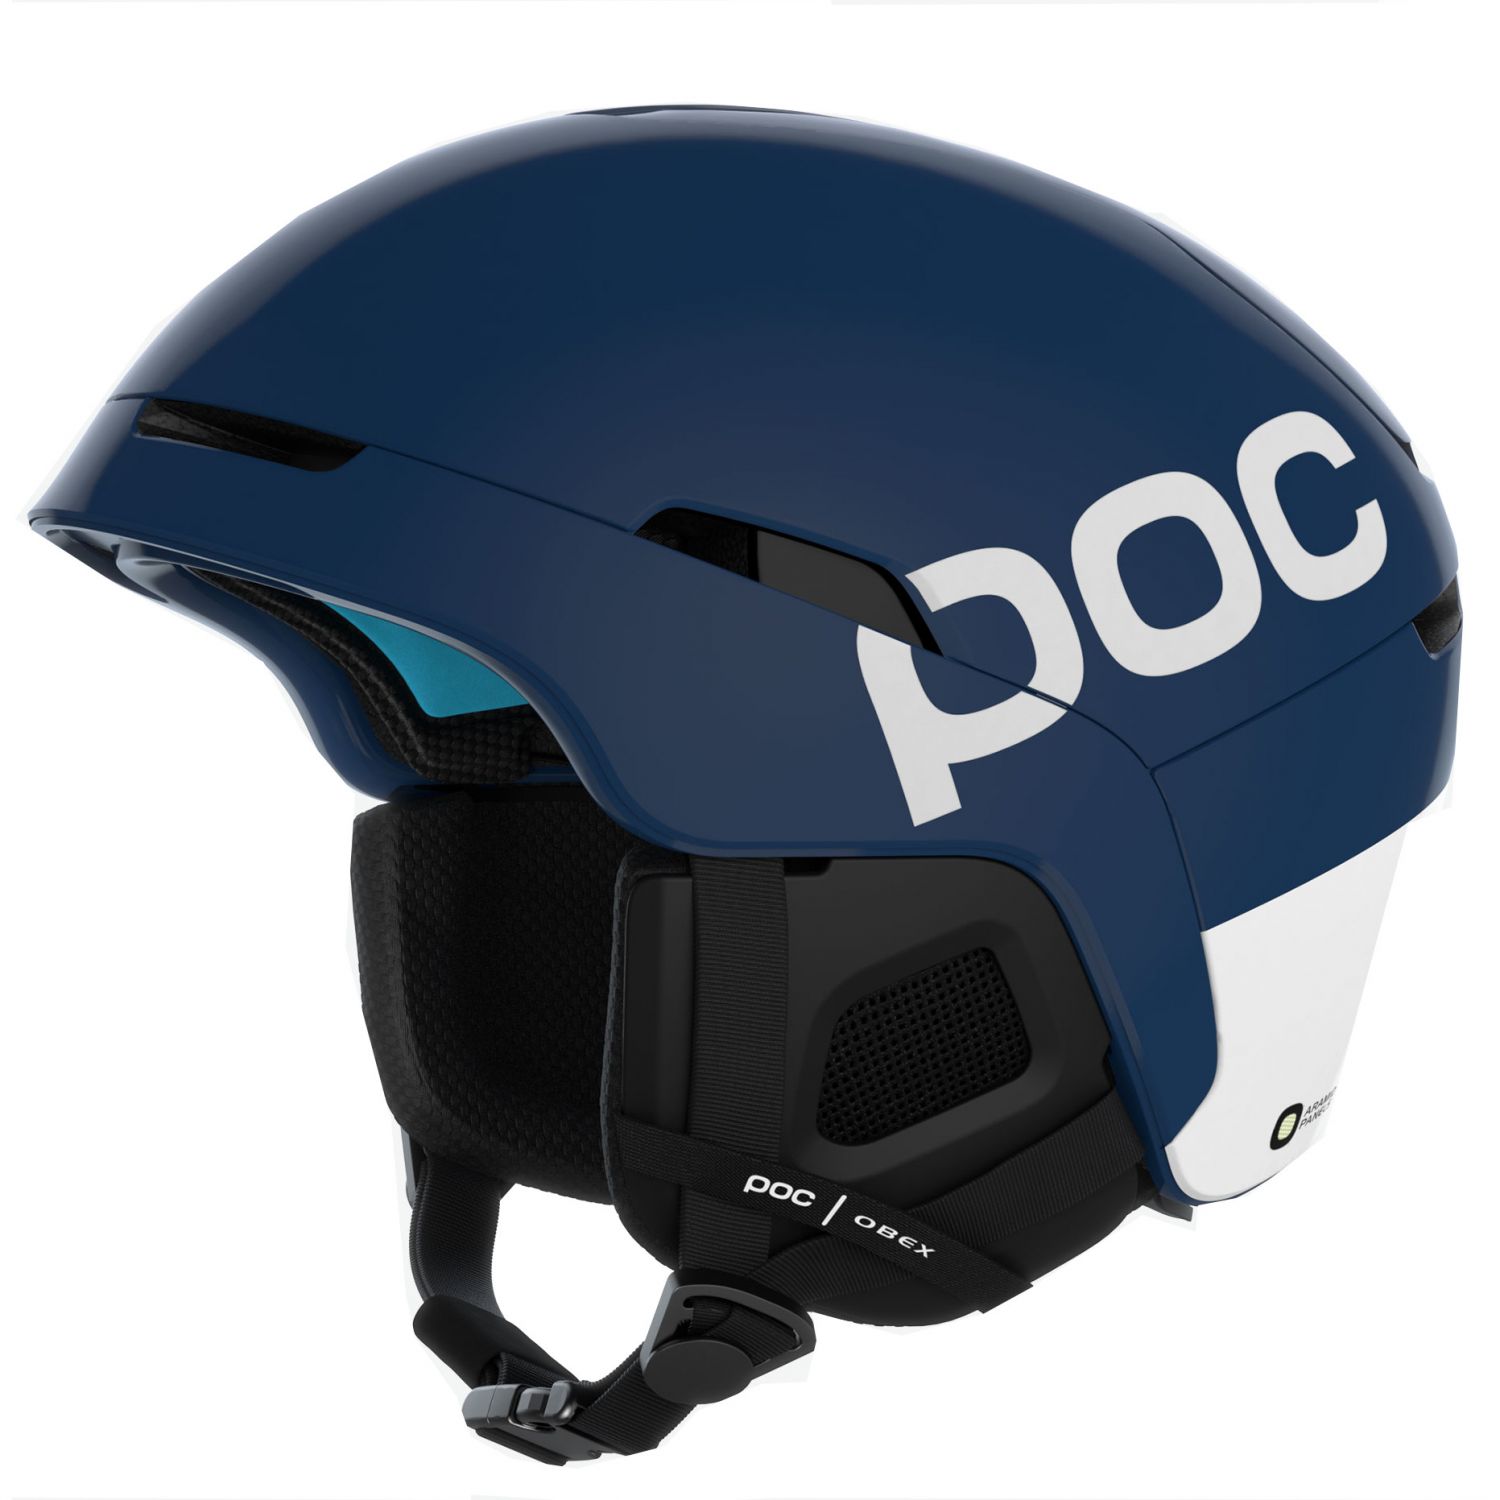 Billede af POC Obex Backcountry Spin, skihjelm, blå